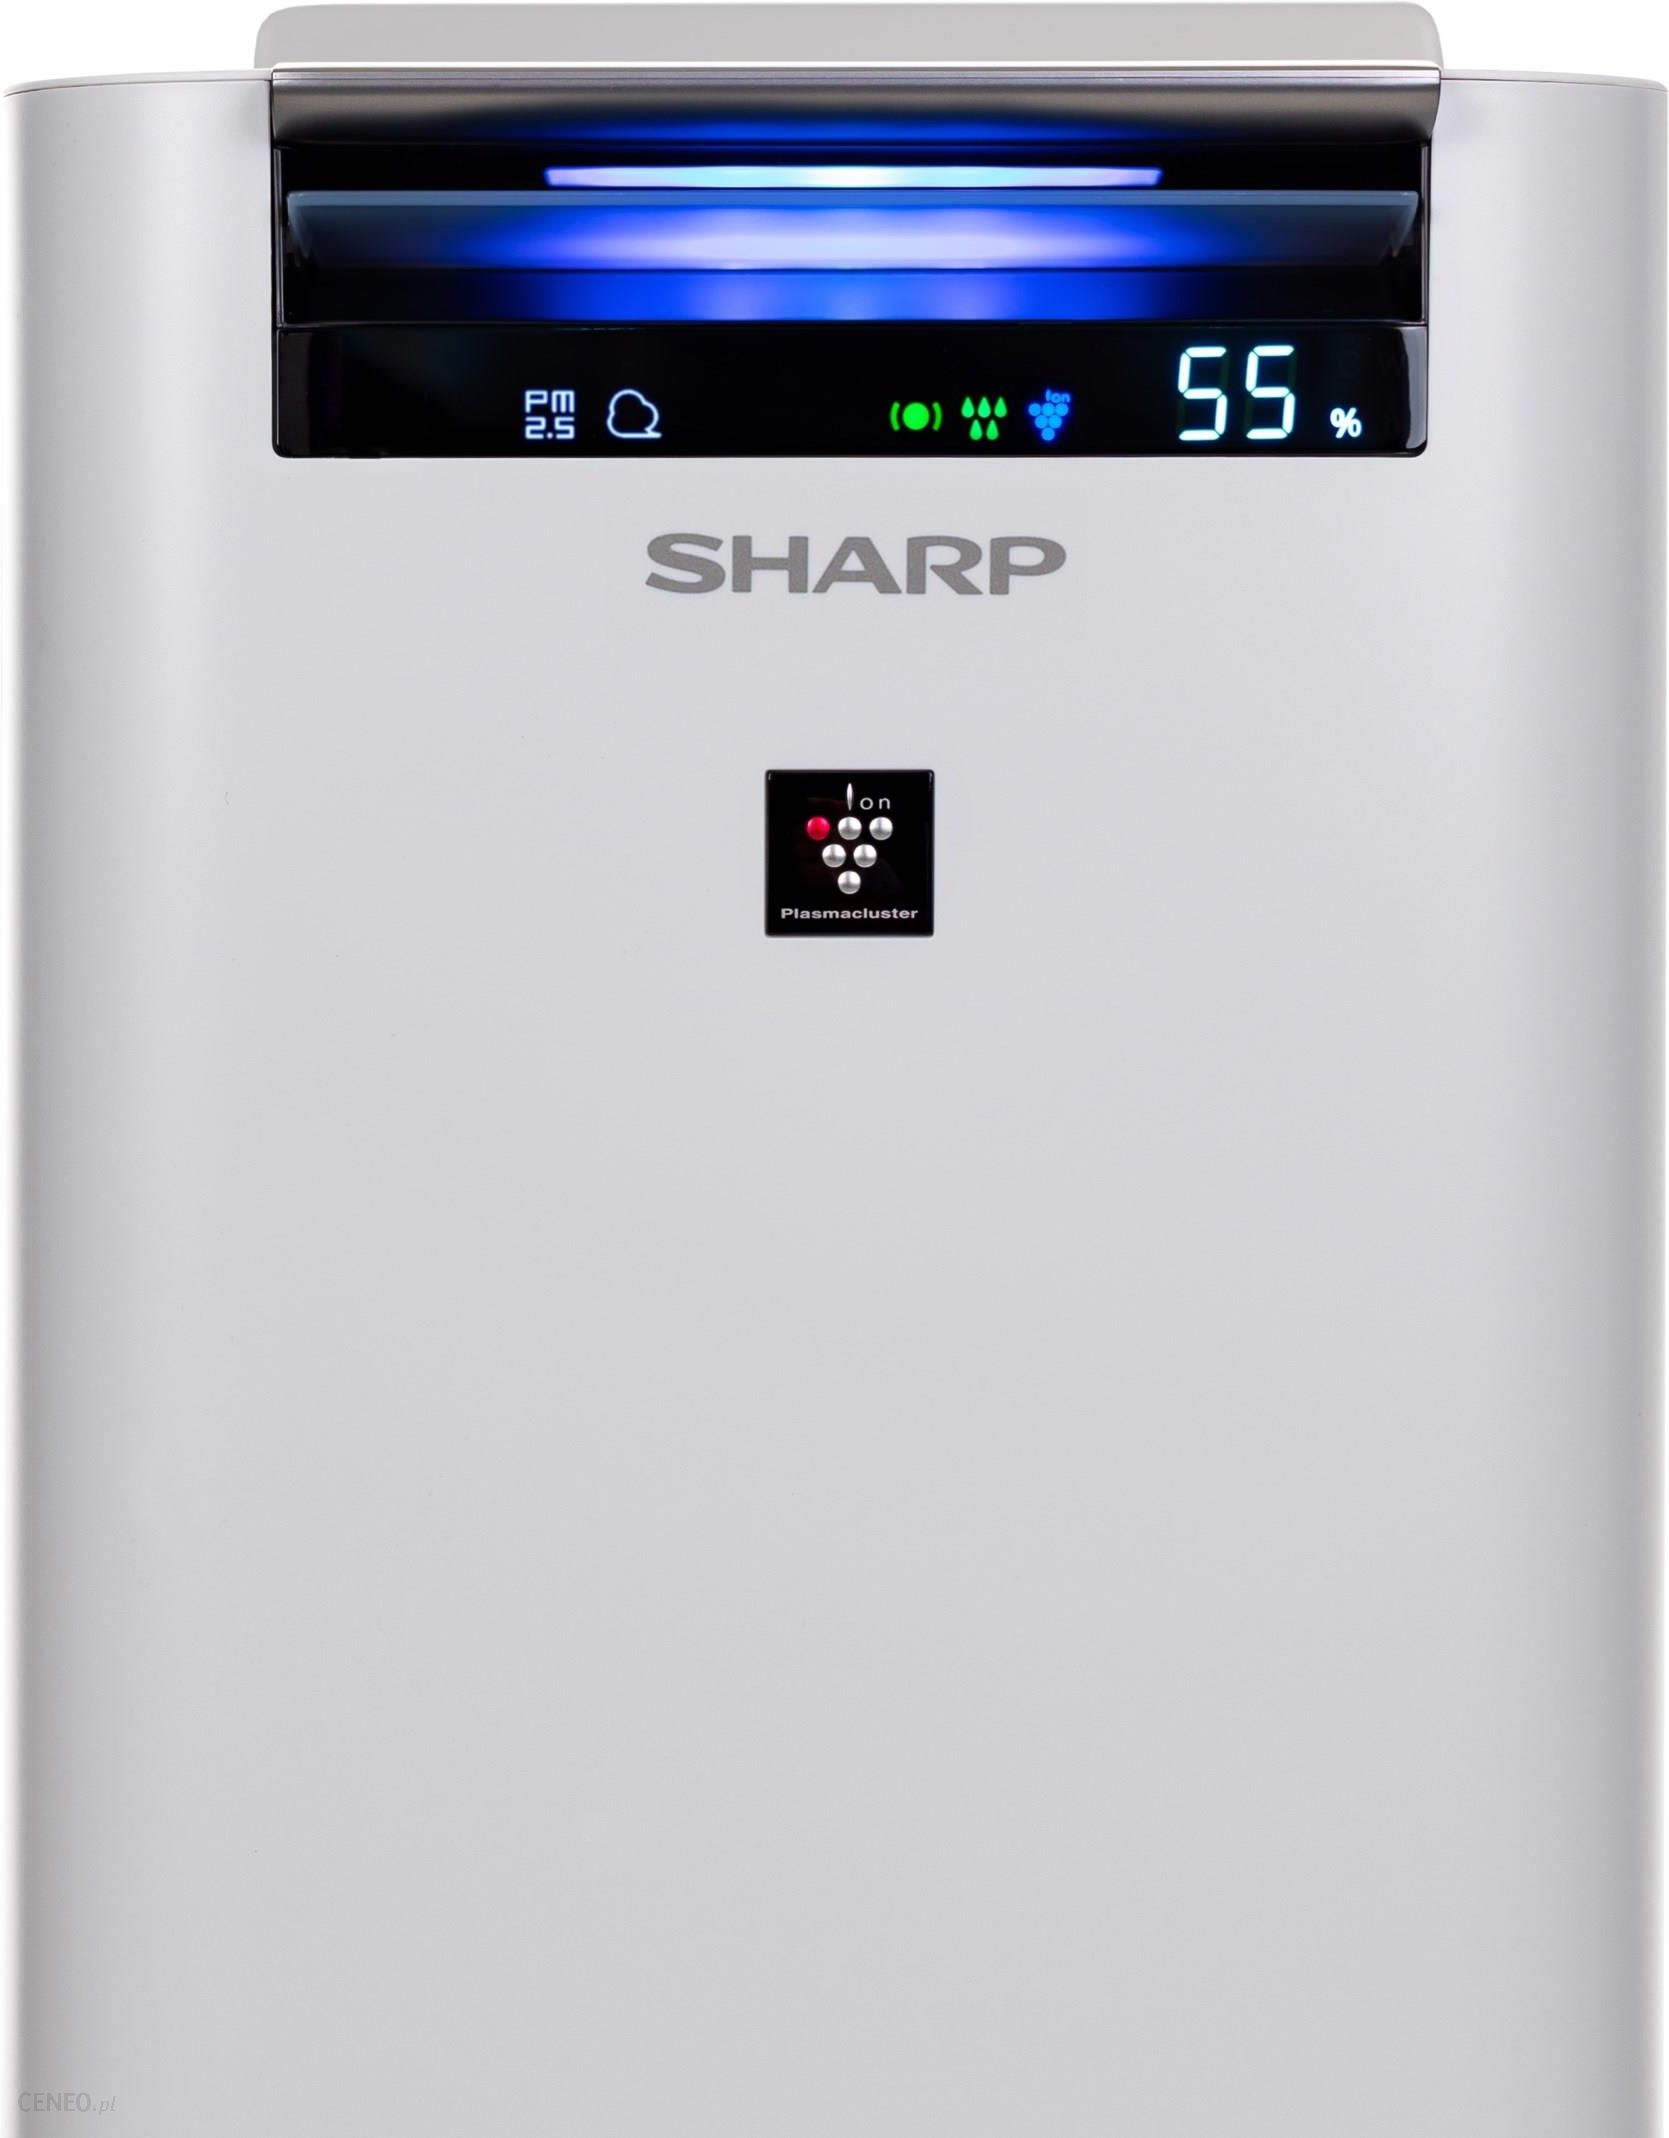 Sharp UA-HG40E-L